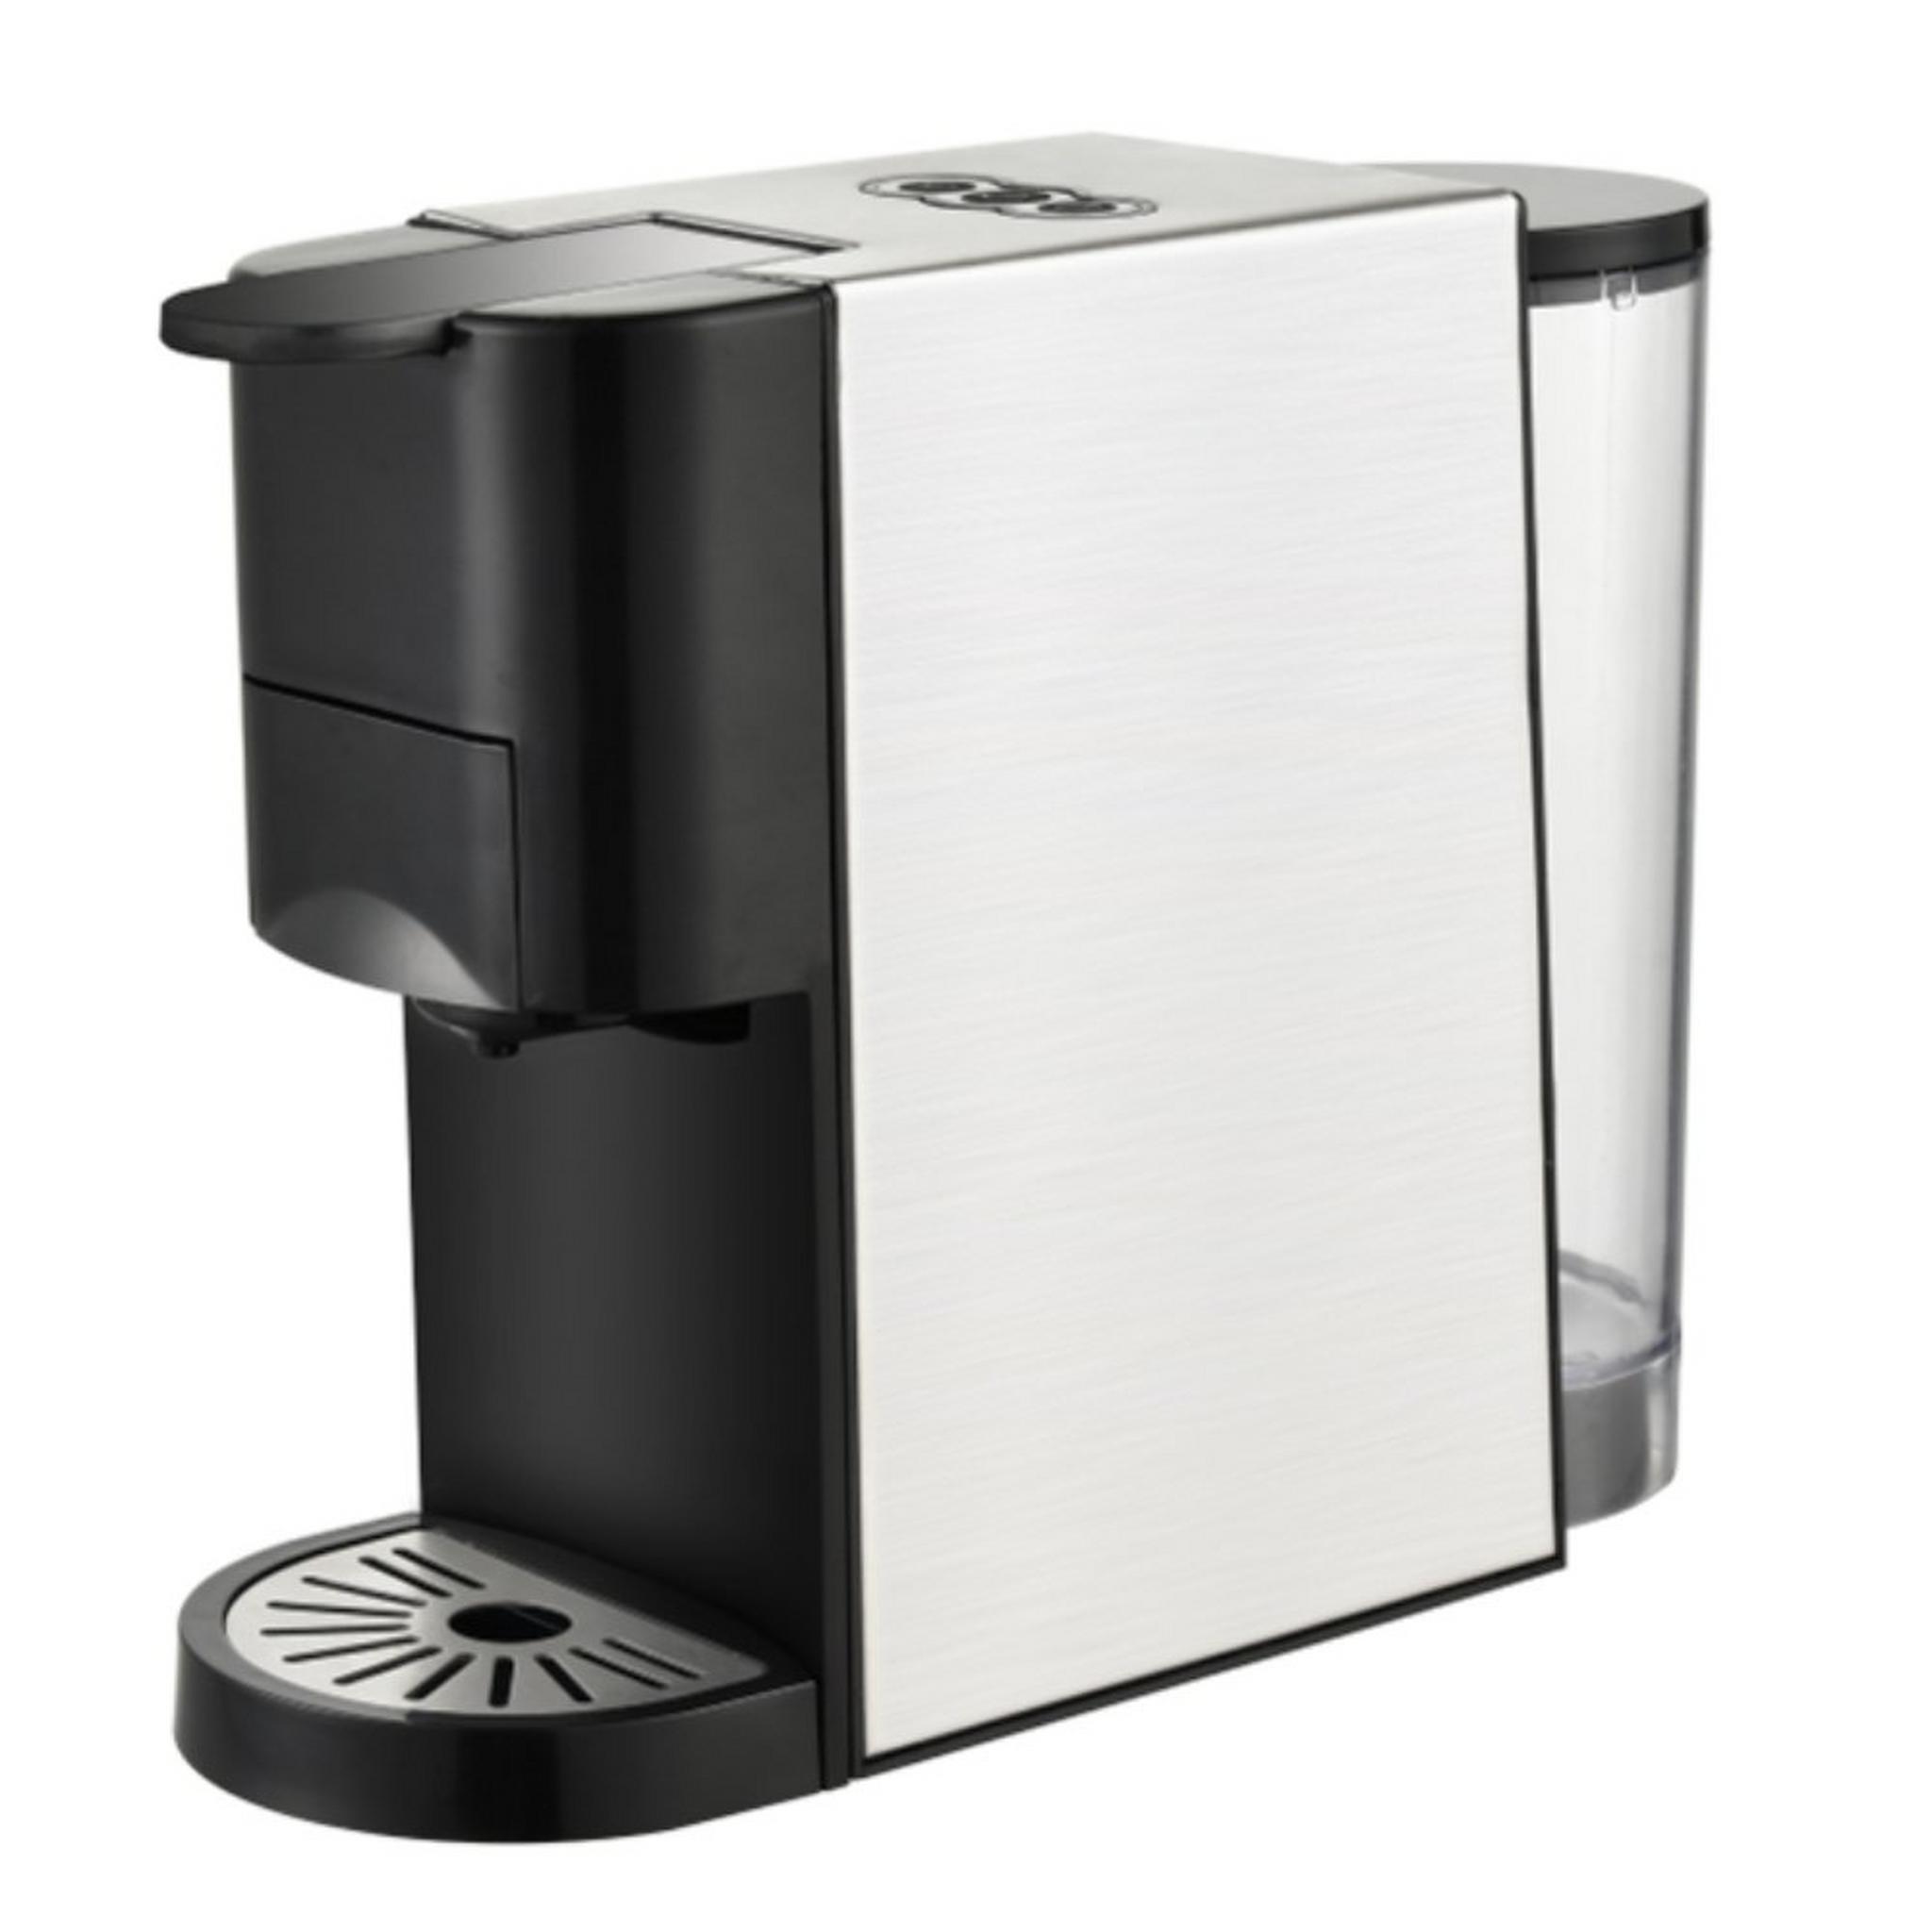 ماكينة تحضير القهوة متعددة الكبسولات من ونسا، قدرة 1450 واط، سعة 0.8 لتر، AC-513K - أسود/فضي